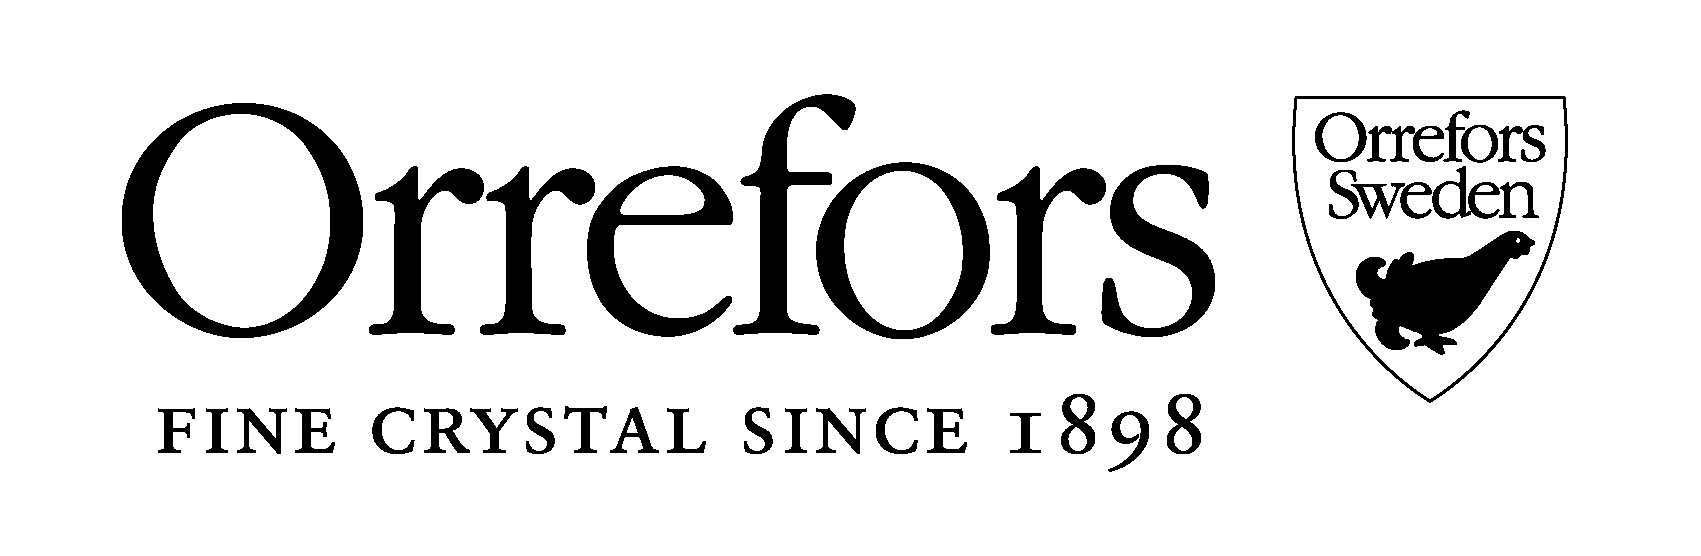 Logotyp för Orrefors